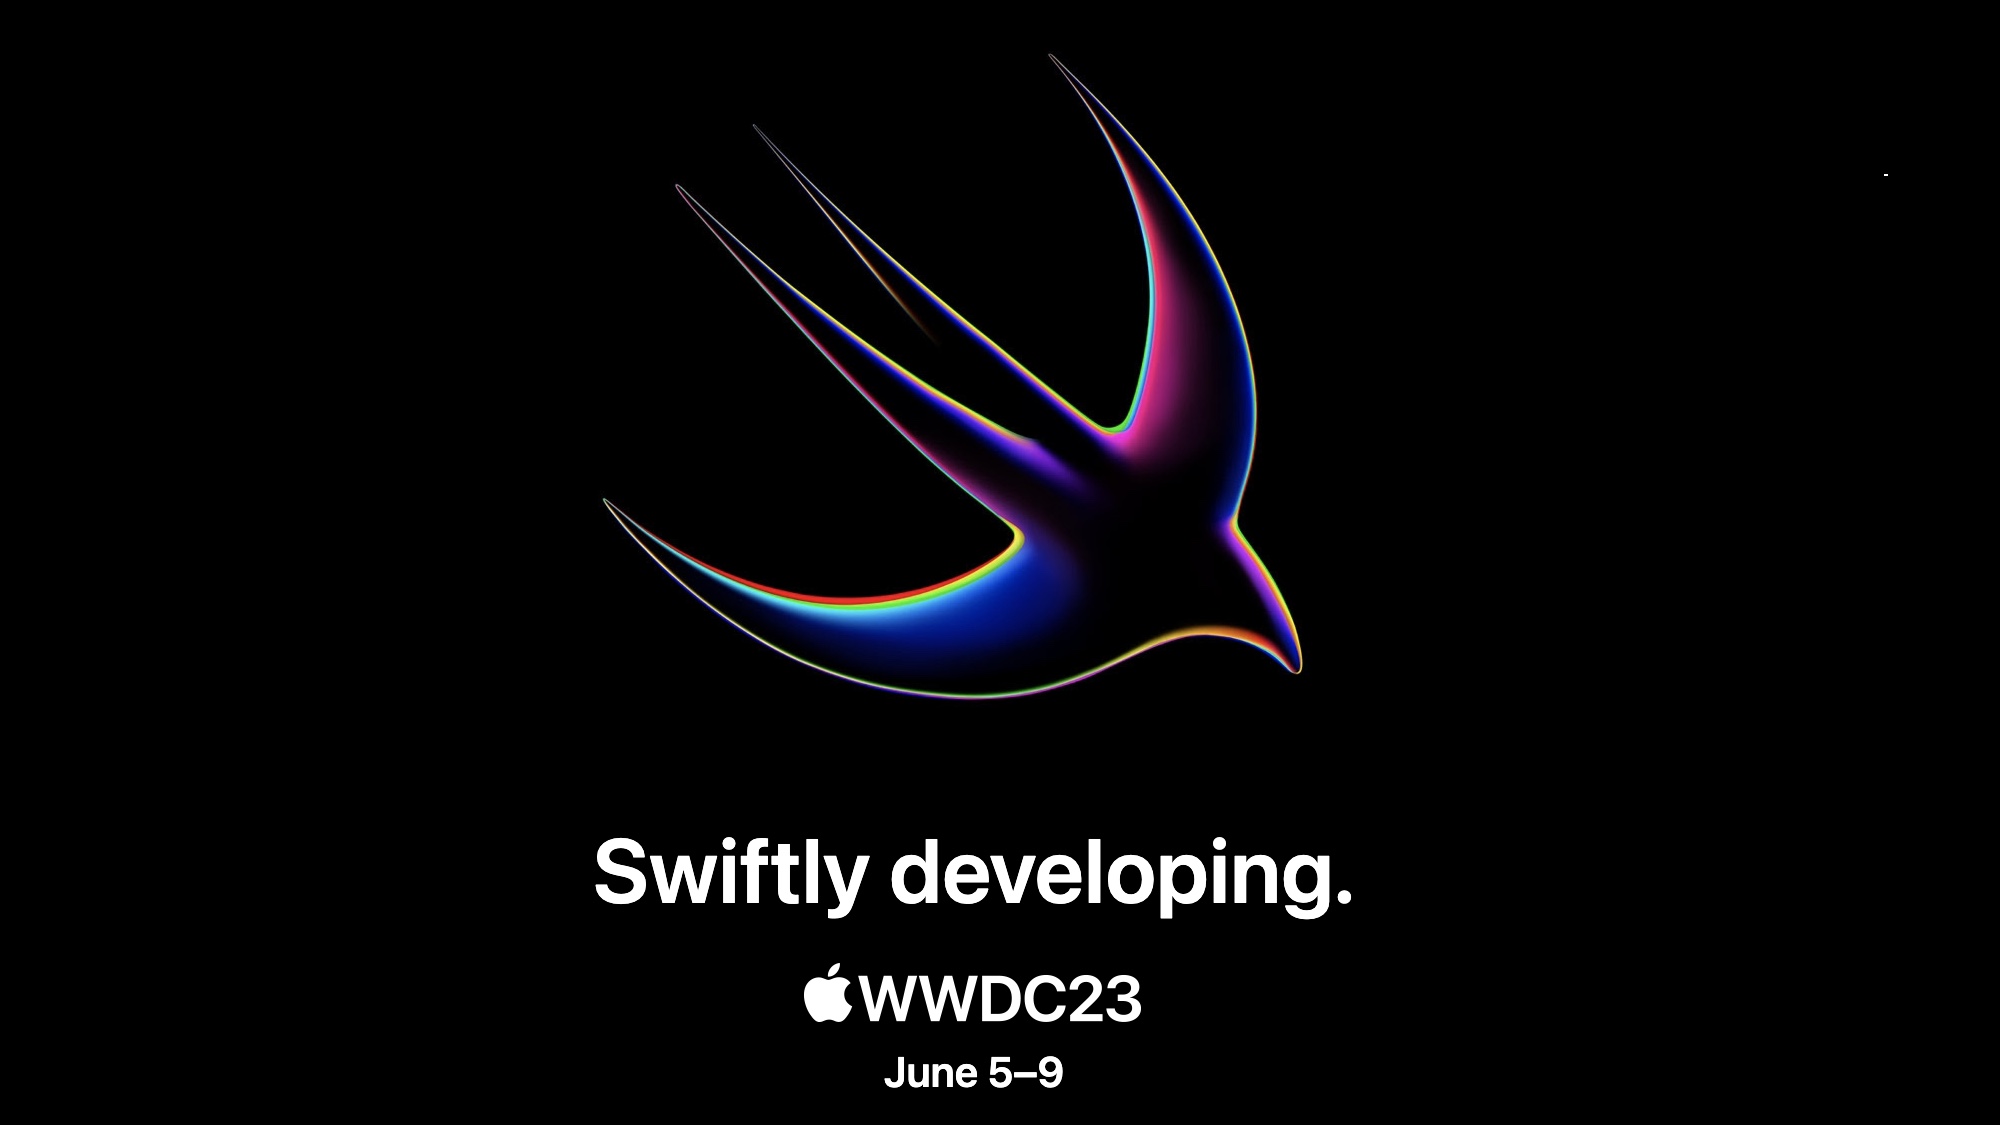 WWDC 2023 keynote invitation